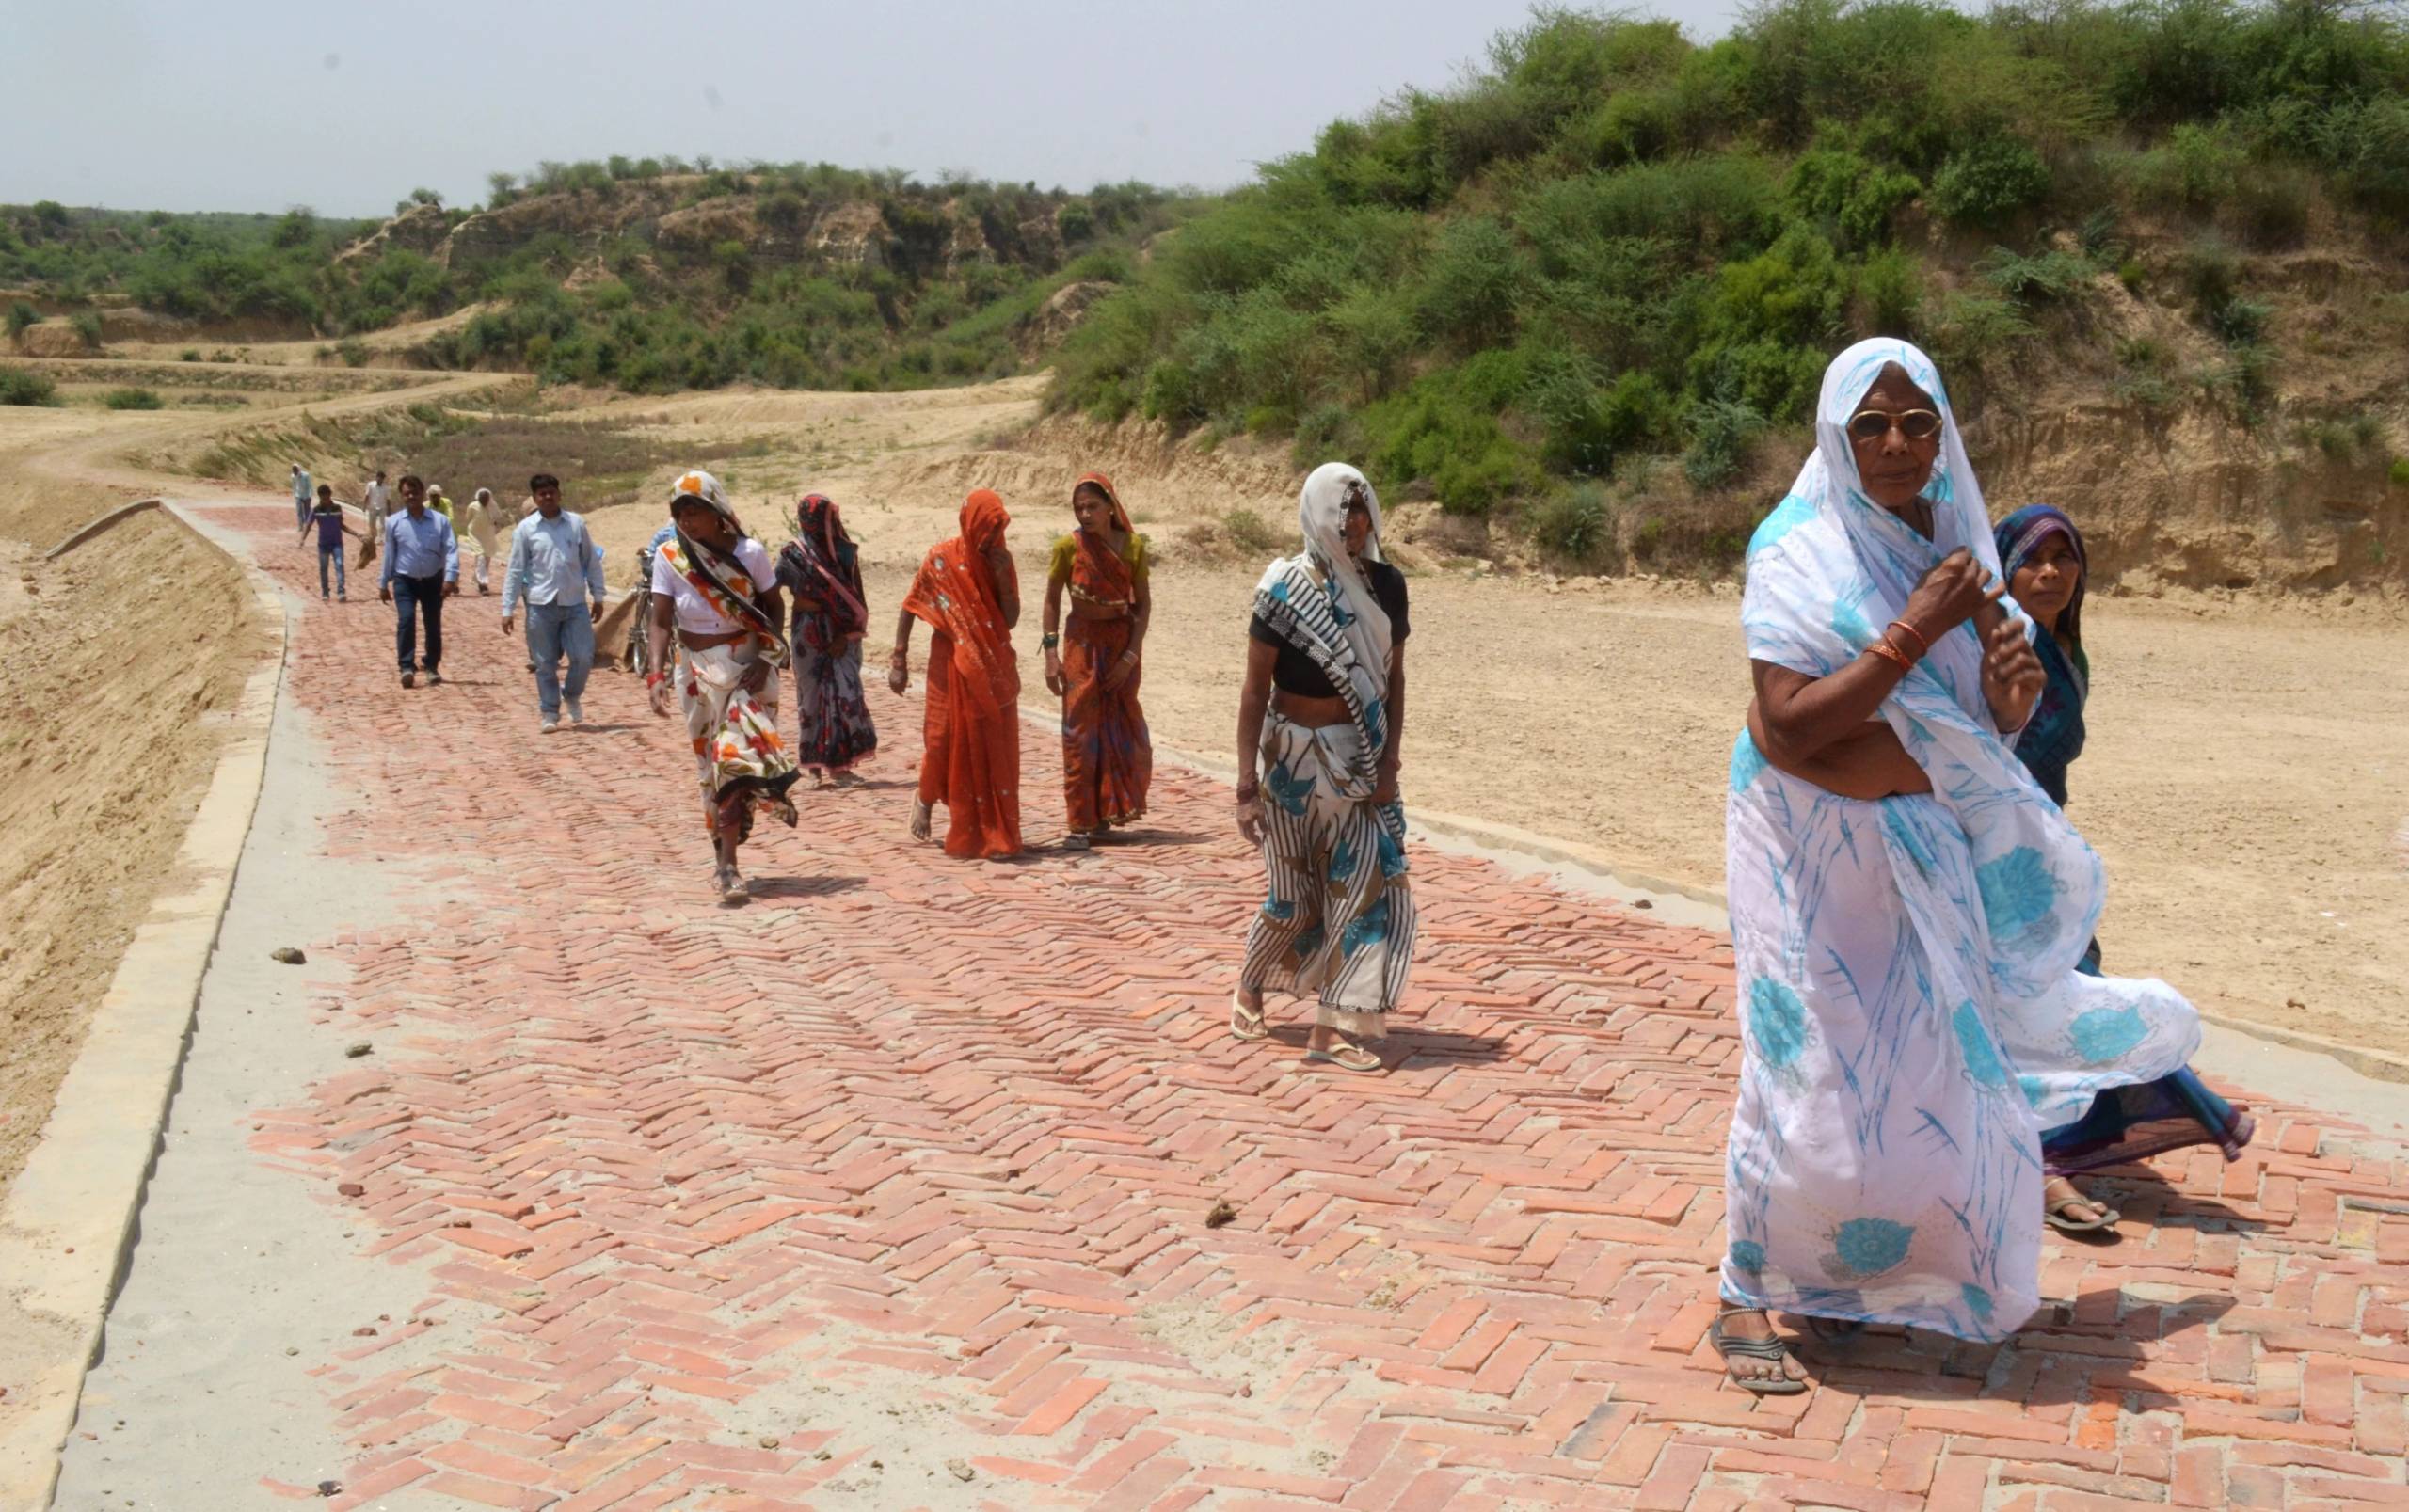 Topluluk üyeleri, Hindistan'ın Uttar Pradesh eyaletinin kavrulmuş Etawah bölgesinde yürüyor. Bu bölgelerde iklim değişikliği ile şiddetlenen kuraklık koşulları hakim.